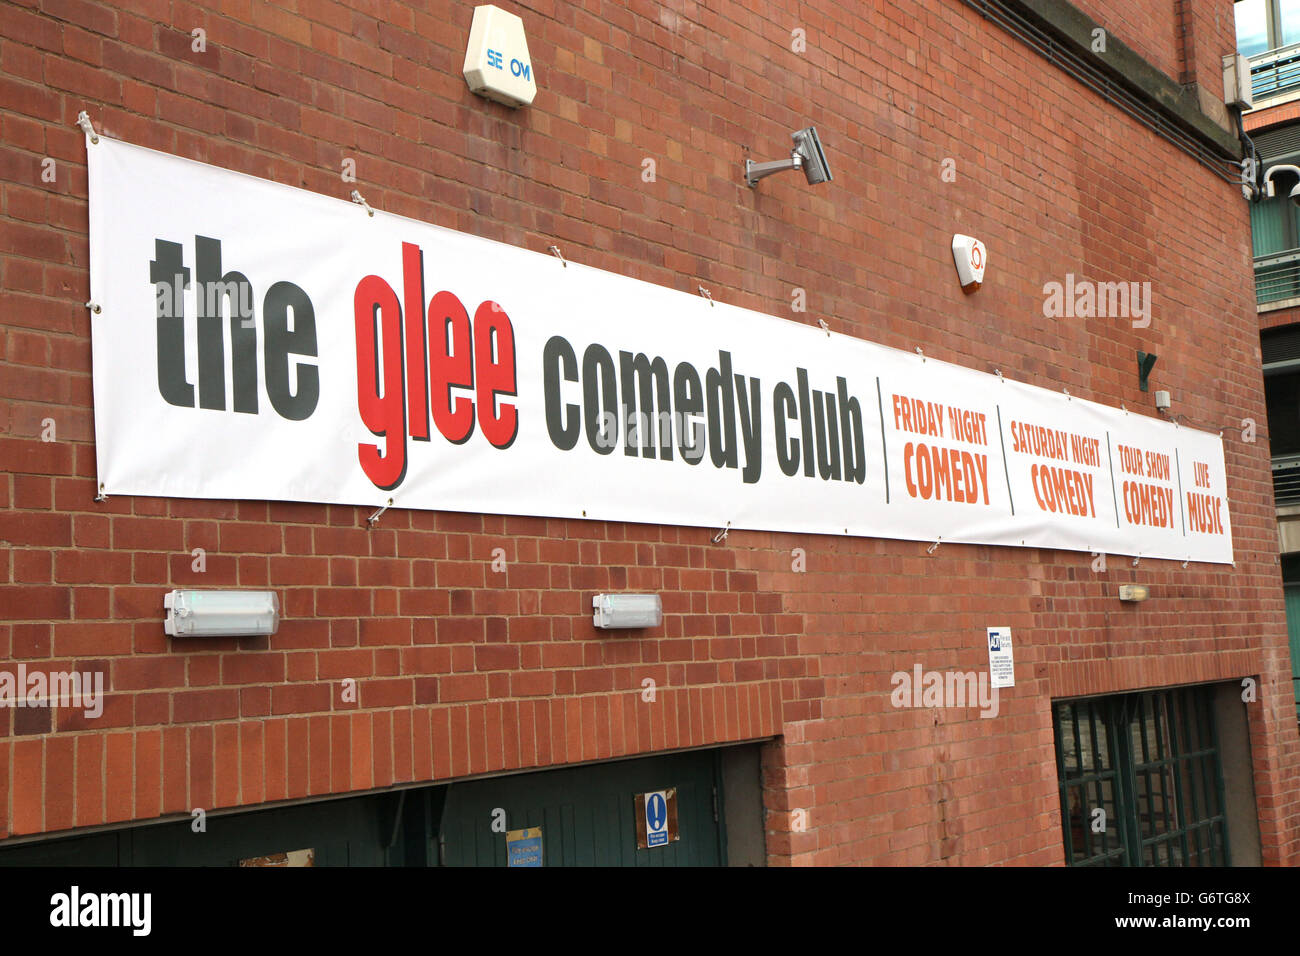 Vista general del Glee Club en Nottingham. Se ha determinado que el programa DE televisión ESTADOUNIDENSE Glee "ha enlutado y empañado" la reputación de la cadena de clubes de comedia del Reino Unido. Foto de stock